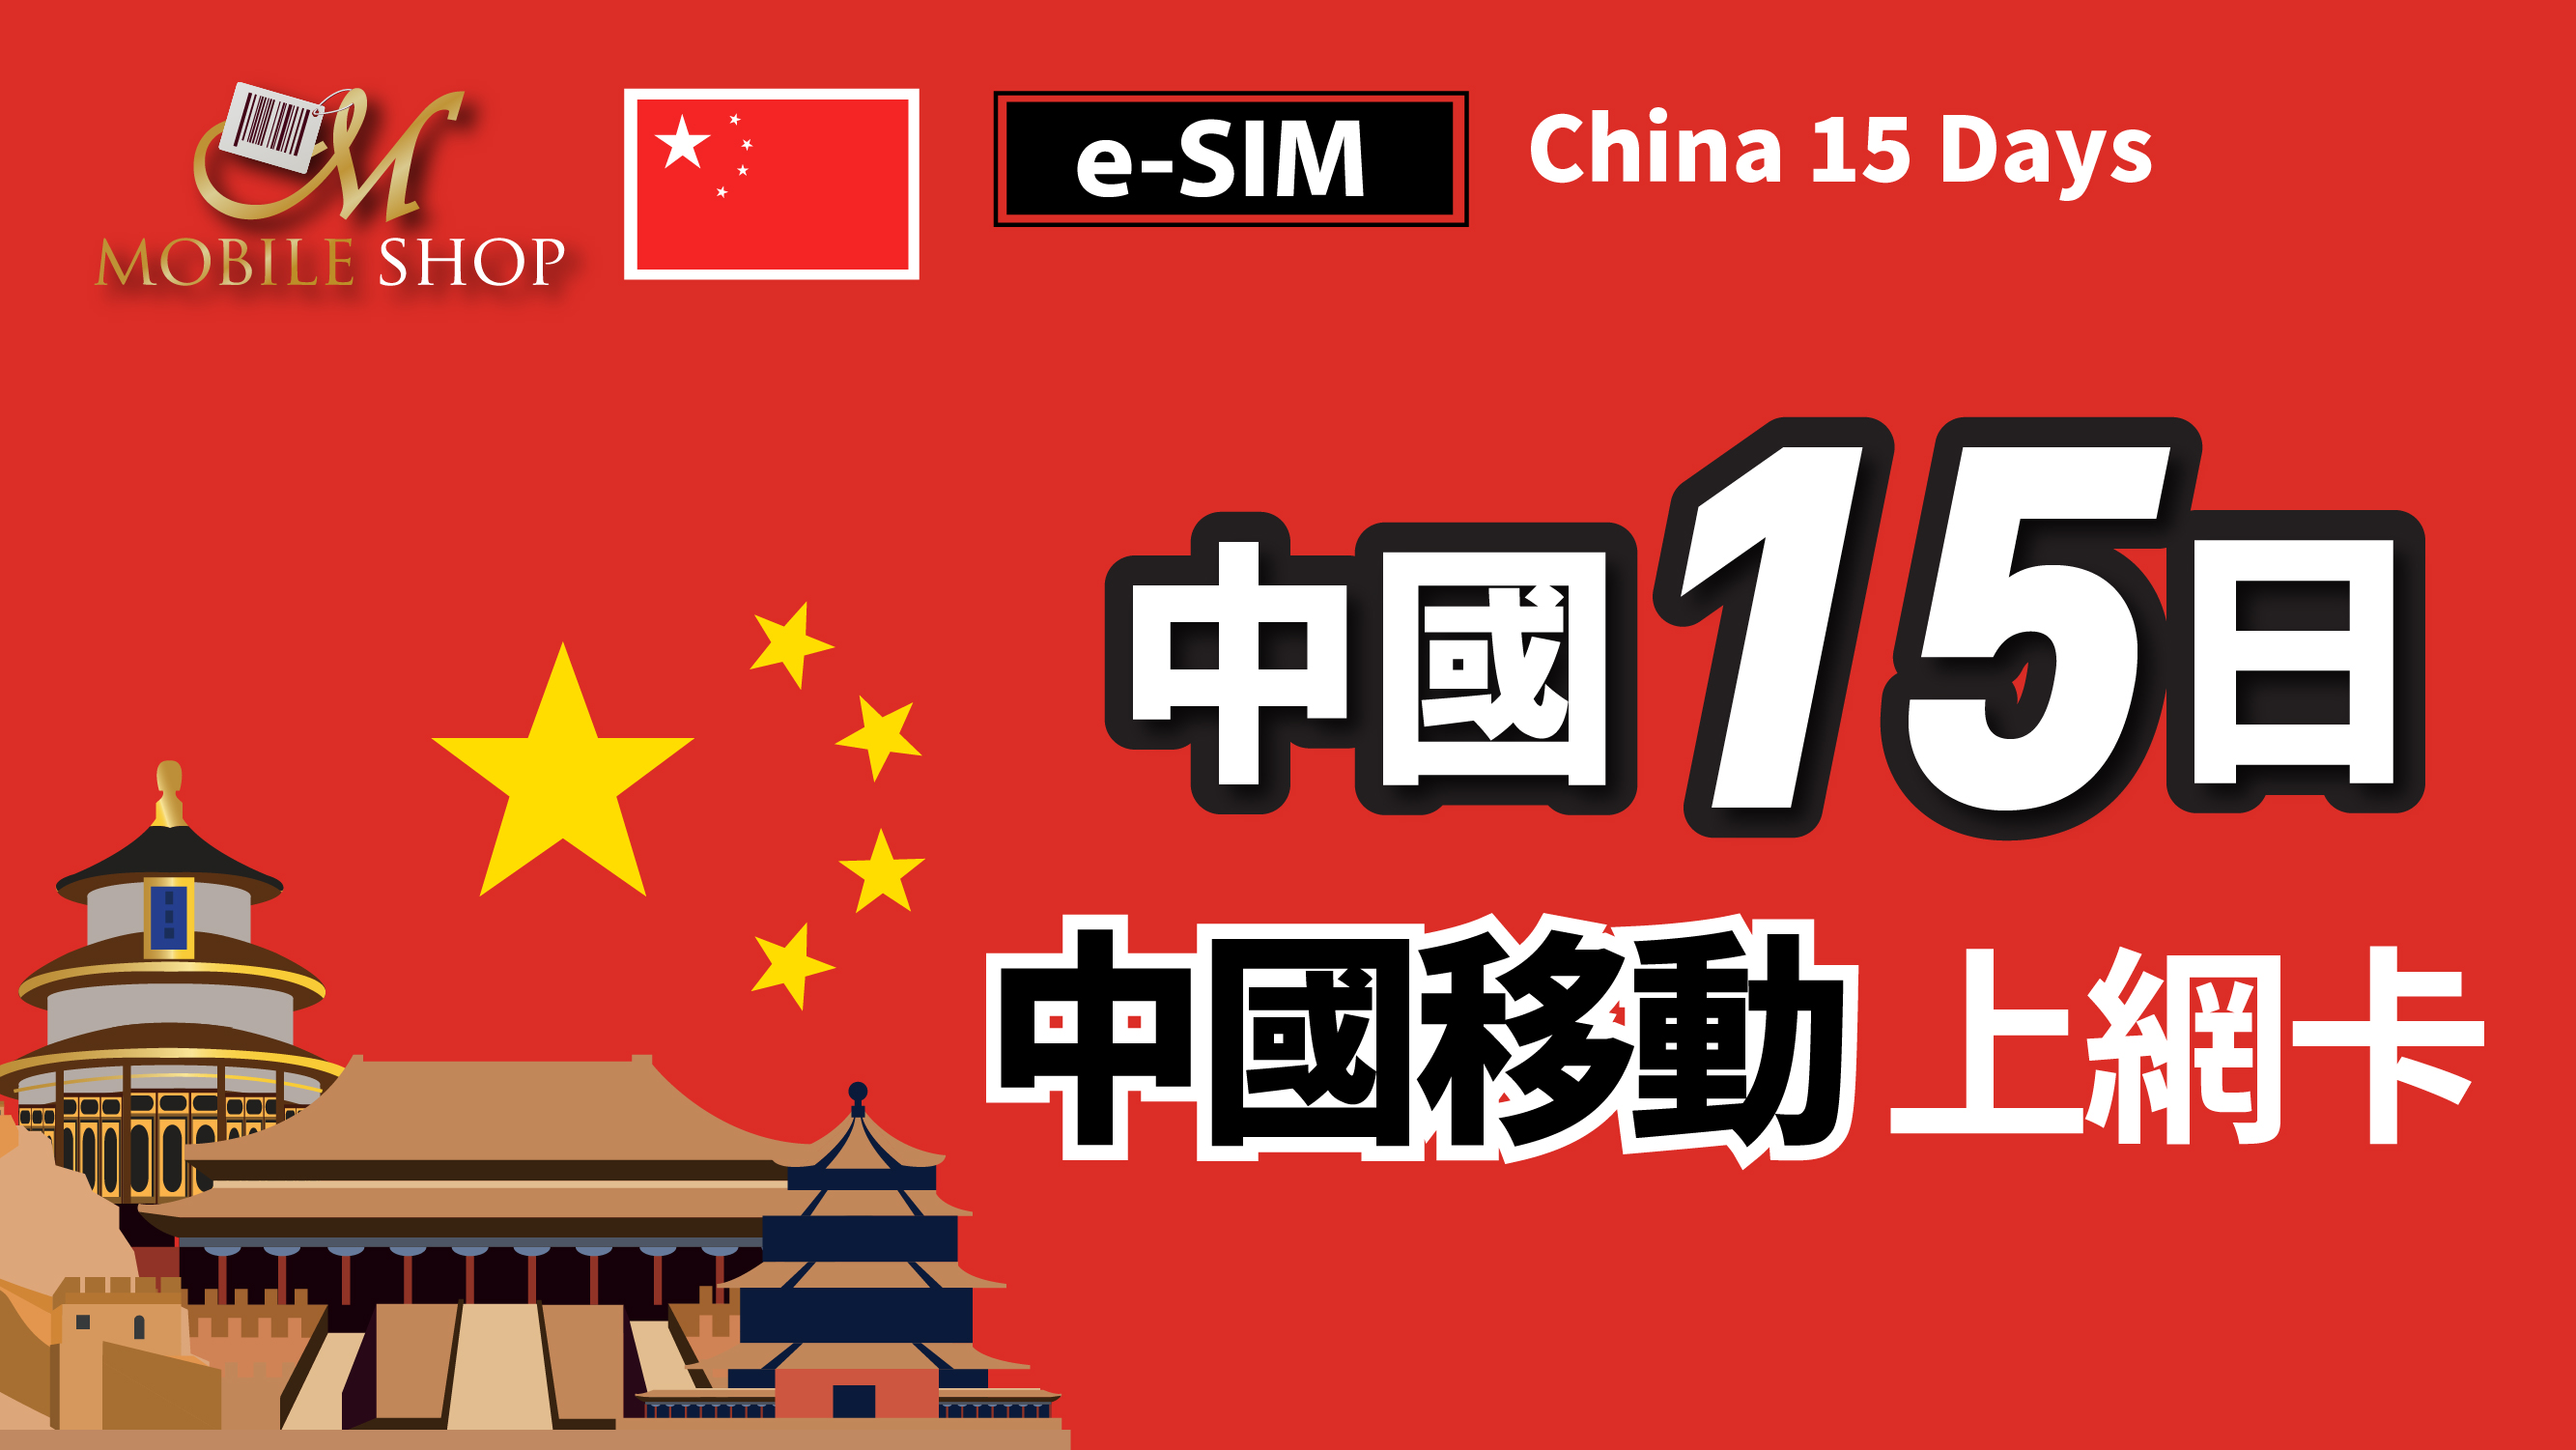 eSIM / China 15days